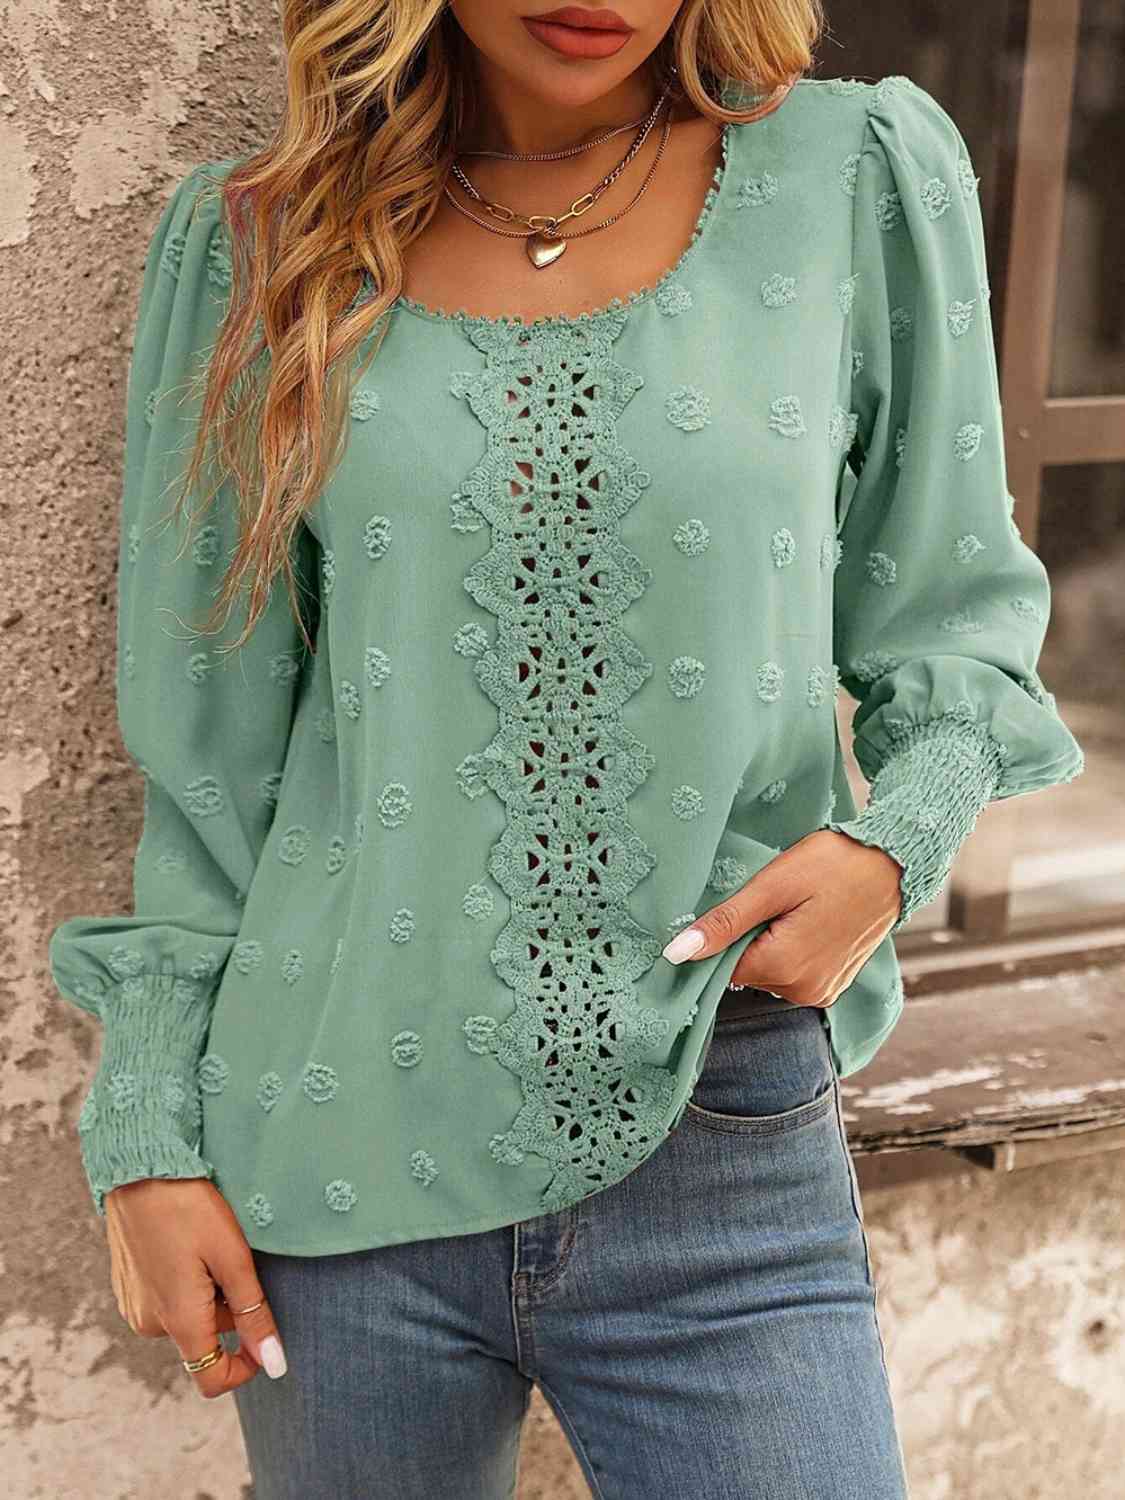 Swiss Dot Lace Detail Blouse (4 Colors) Shirts & Tops Krazy Heart Designs Boutique Gum Leaf S 